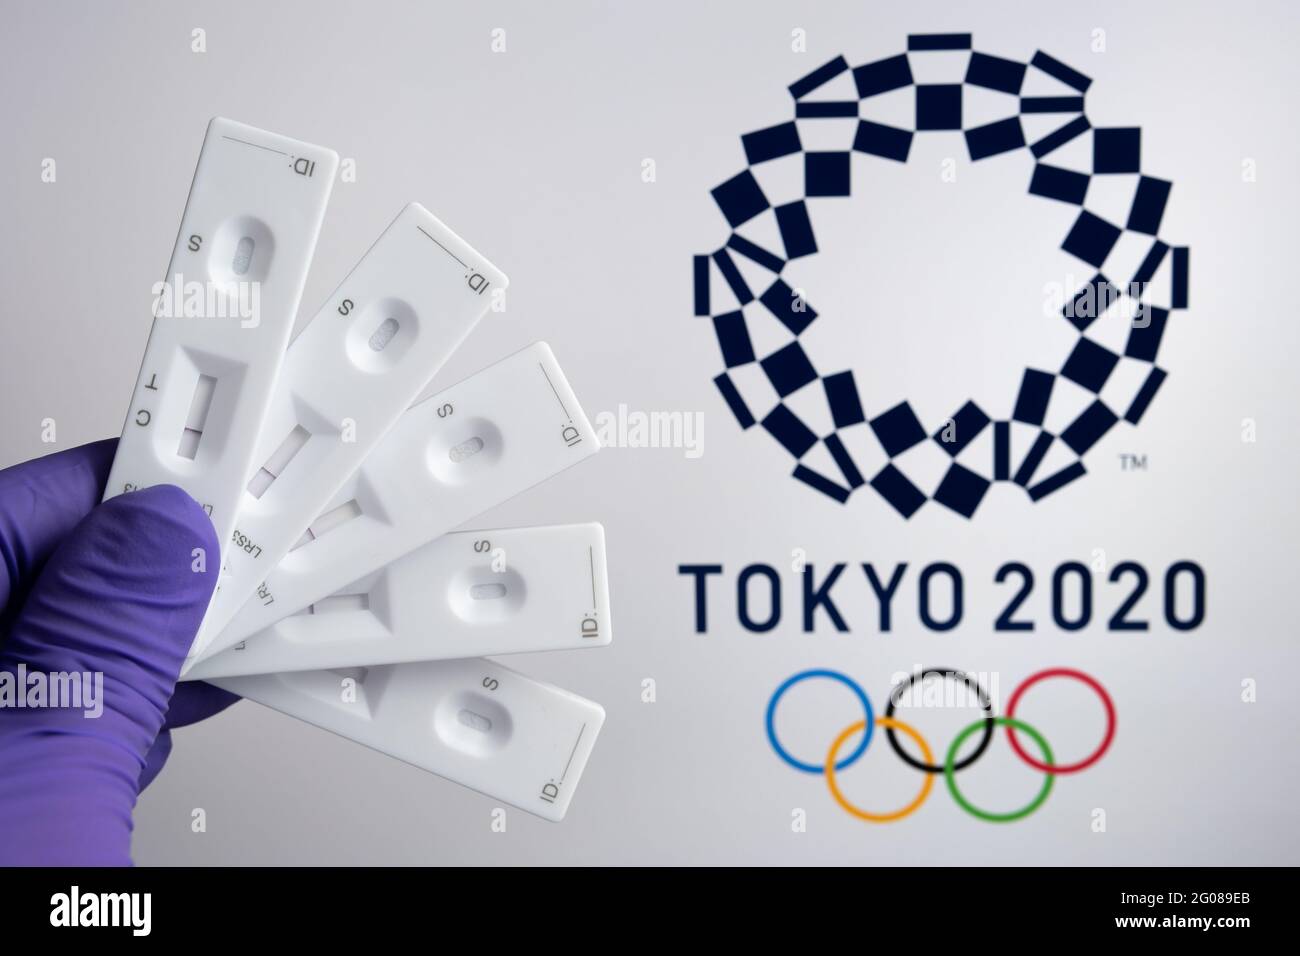 Test PCR negativi davanti e logo Tokyo 2020 offuscato sullo sfondo offuscato. Concetto per i giochi olimpici COVID di Tokyo nel 2021. Stafford, United Kin Foto Stock